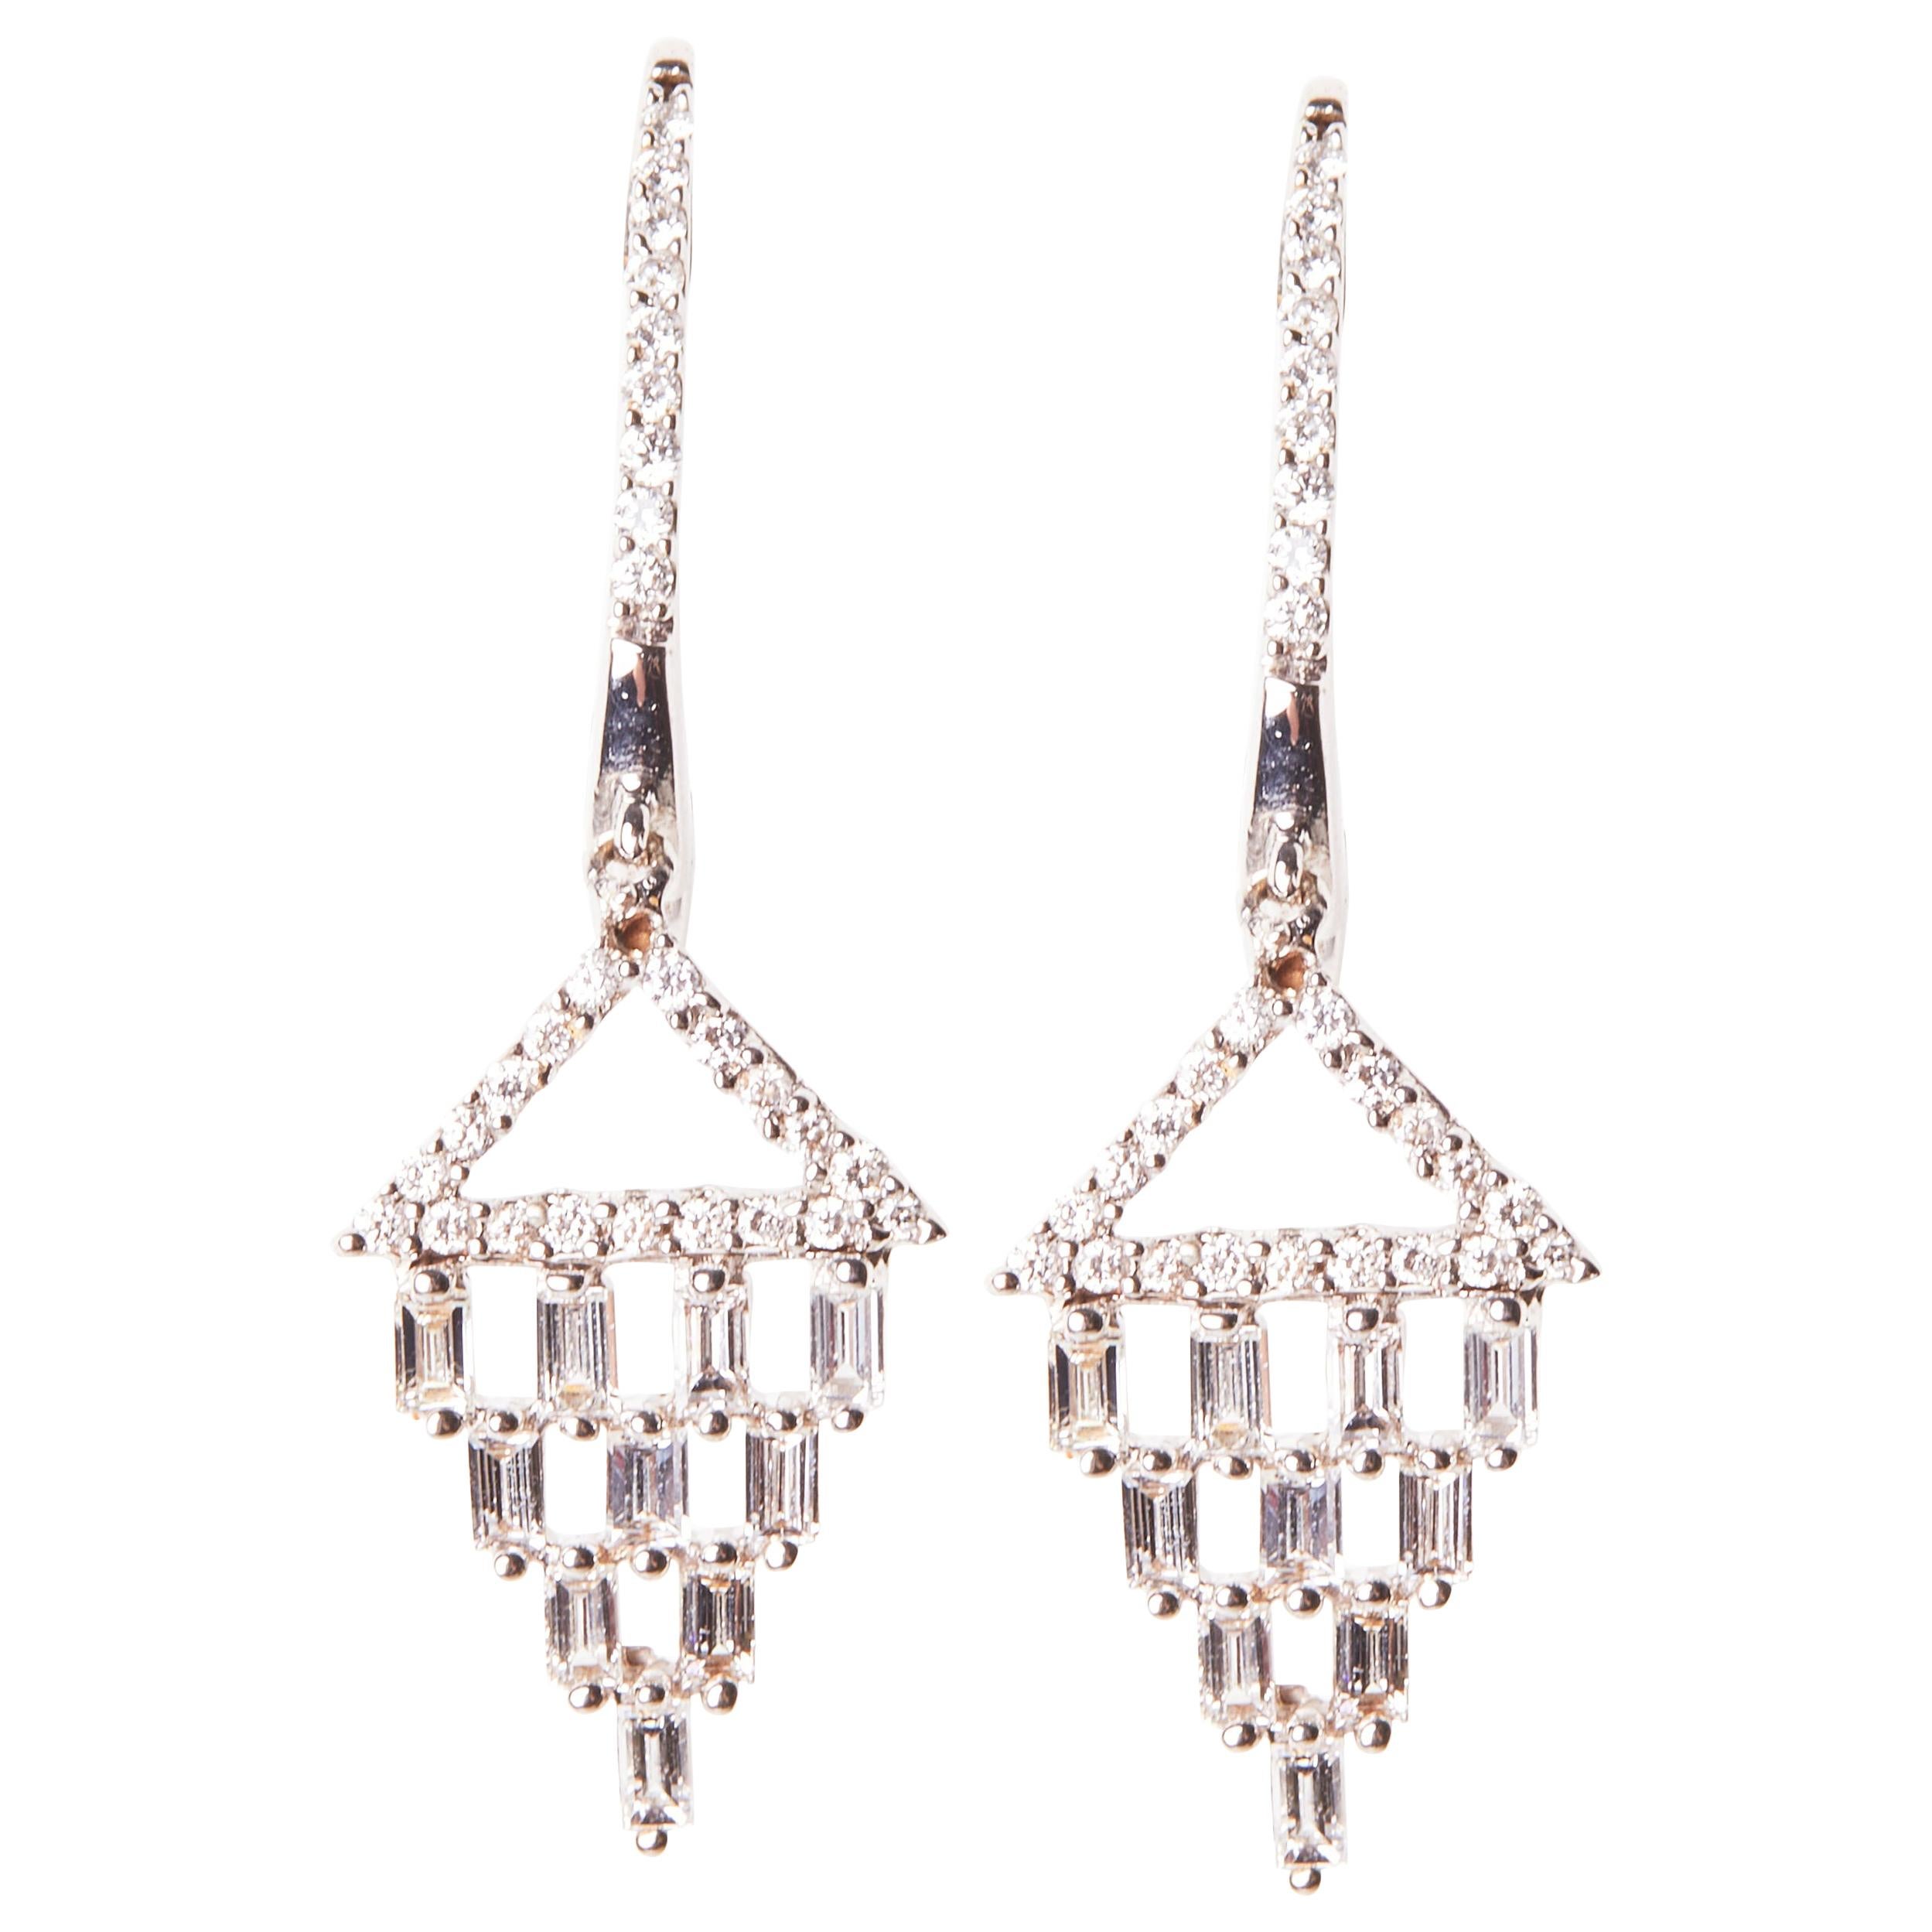 18 Karat White Gold Diamond Dangle Earrings